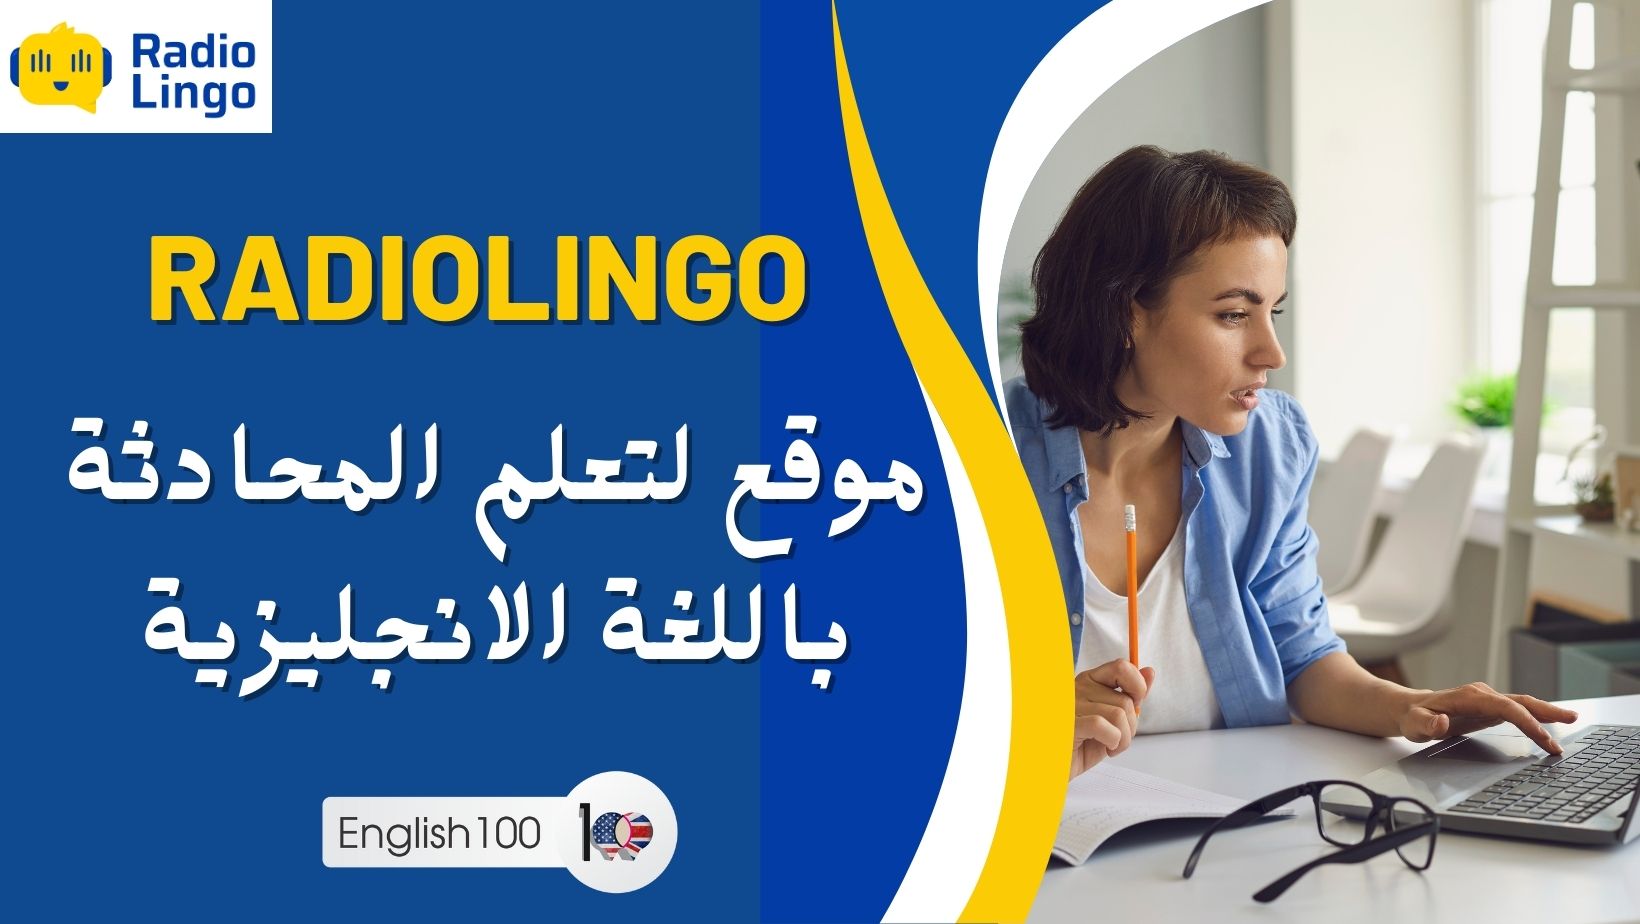 راديولينغو: موقع لتعلم المحادثة باللغة الانجليزية 